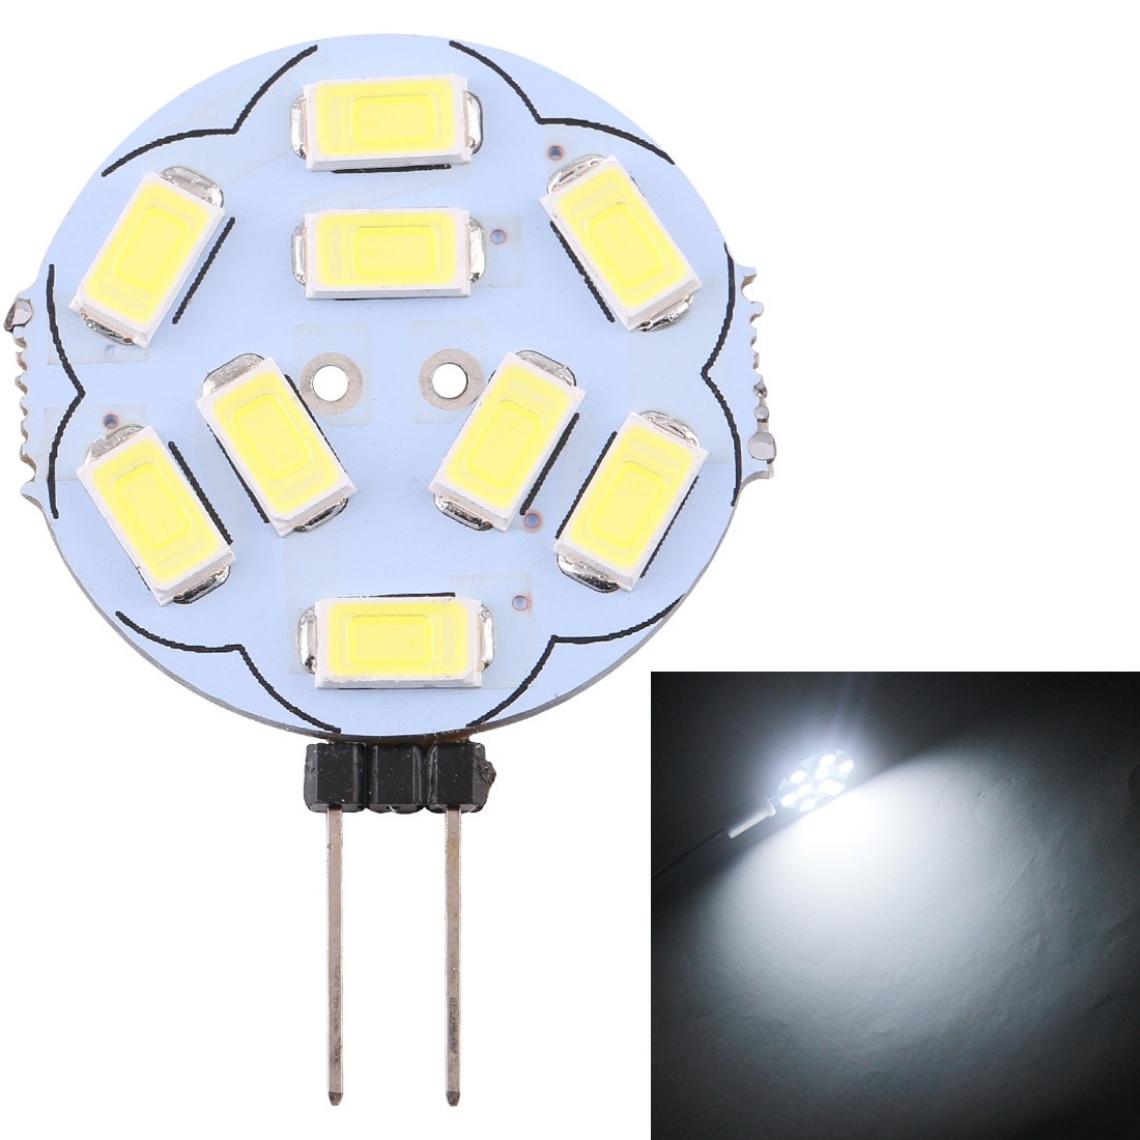 Wewoo - G4 9 LED SMD 5730 180LM 6000-6500K Ampoule de lampe de base à broche à économie d'énergie à intensité variableDC 12V lumière blanche - Ampoules LED